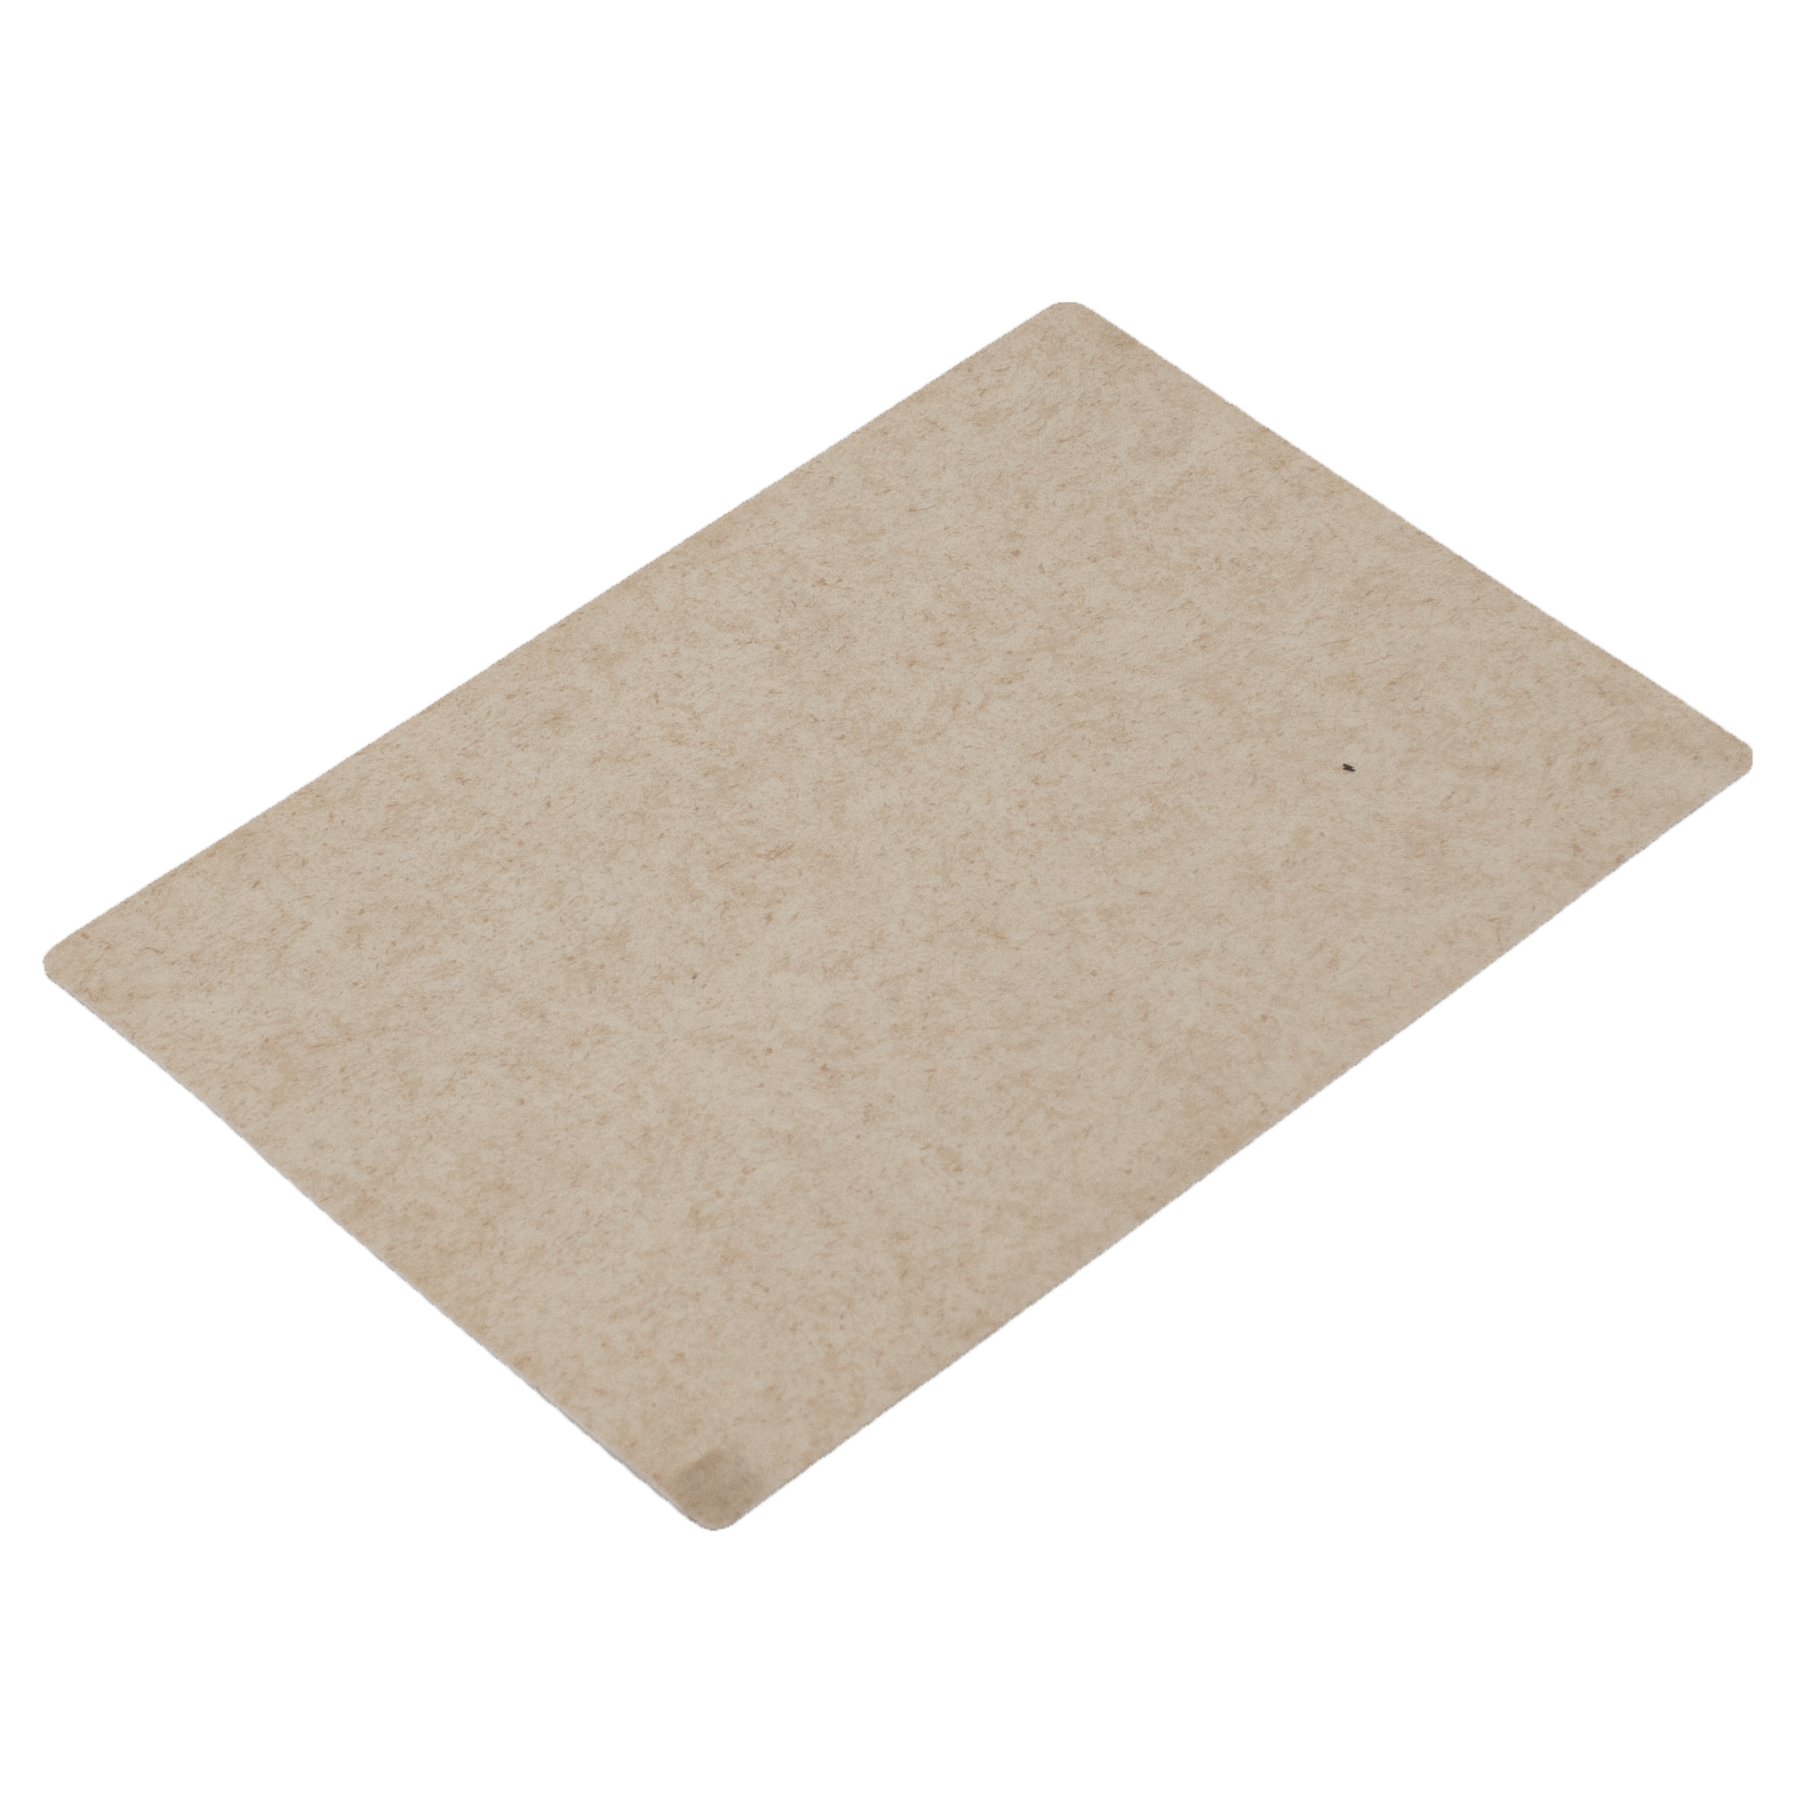 White PVC Flooring For Basement Sheet